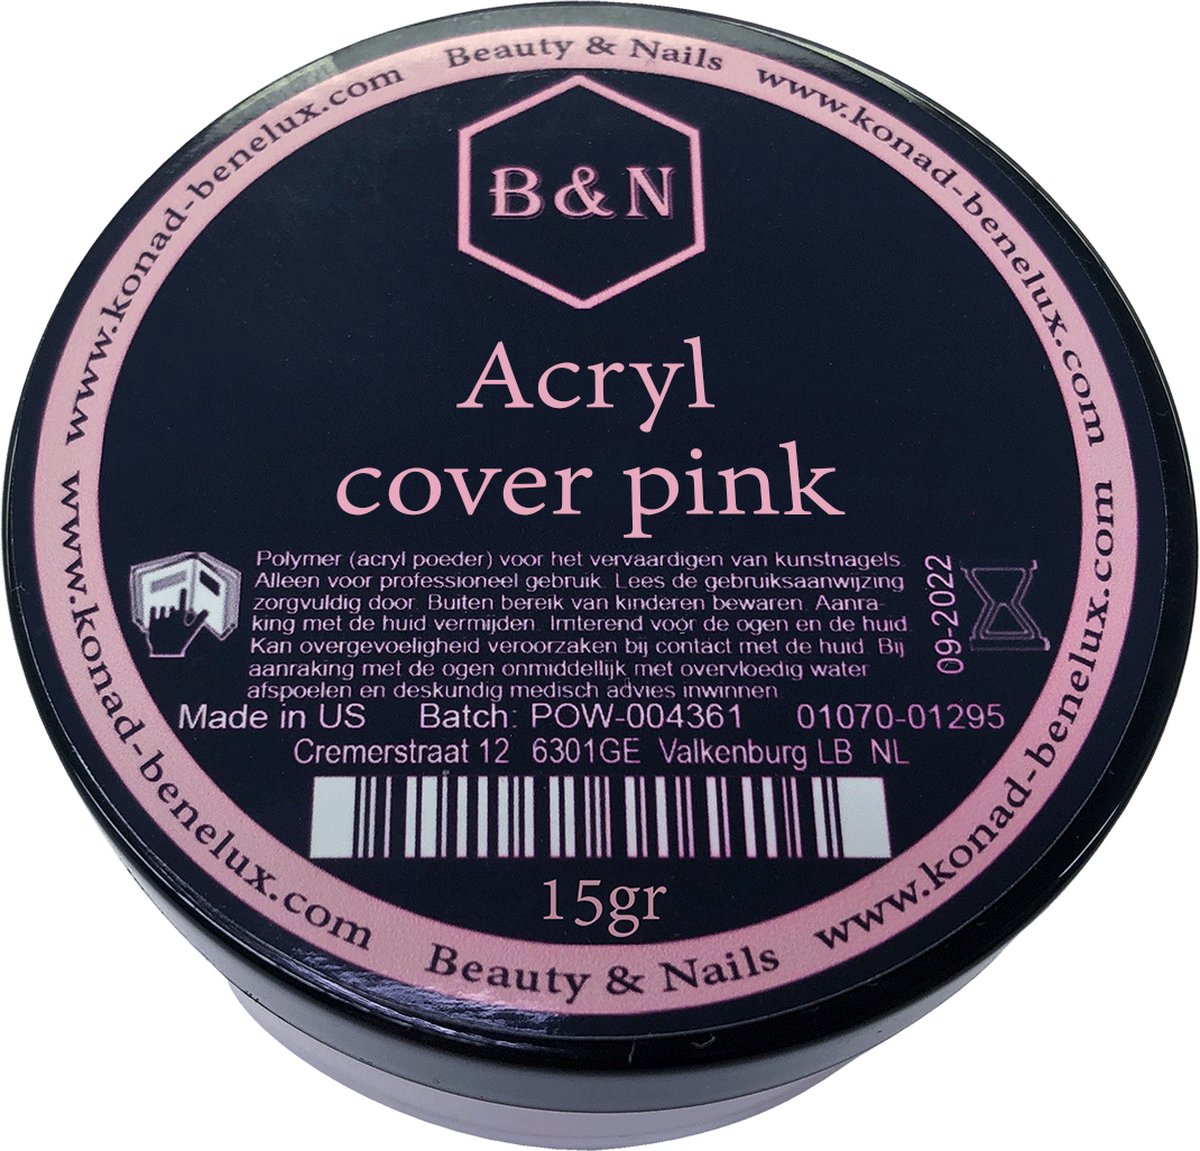 Acryl - cover pink - 15 gr | B&N - acrylpoeder - VEGAN - acrylpoeder